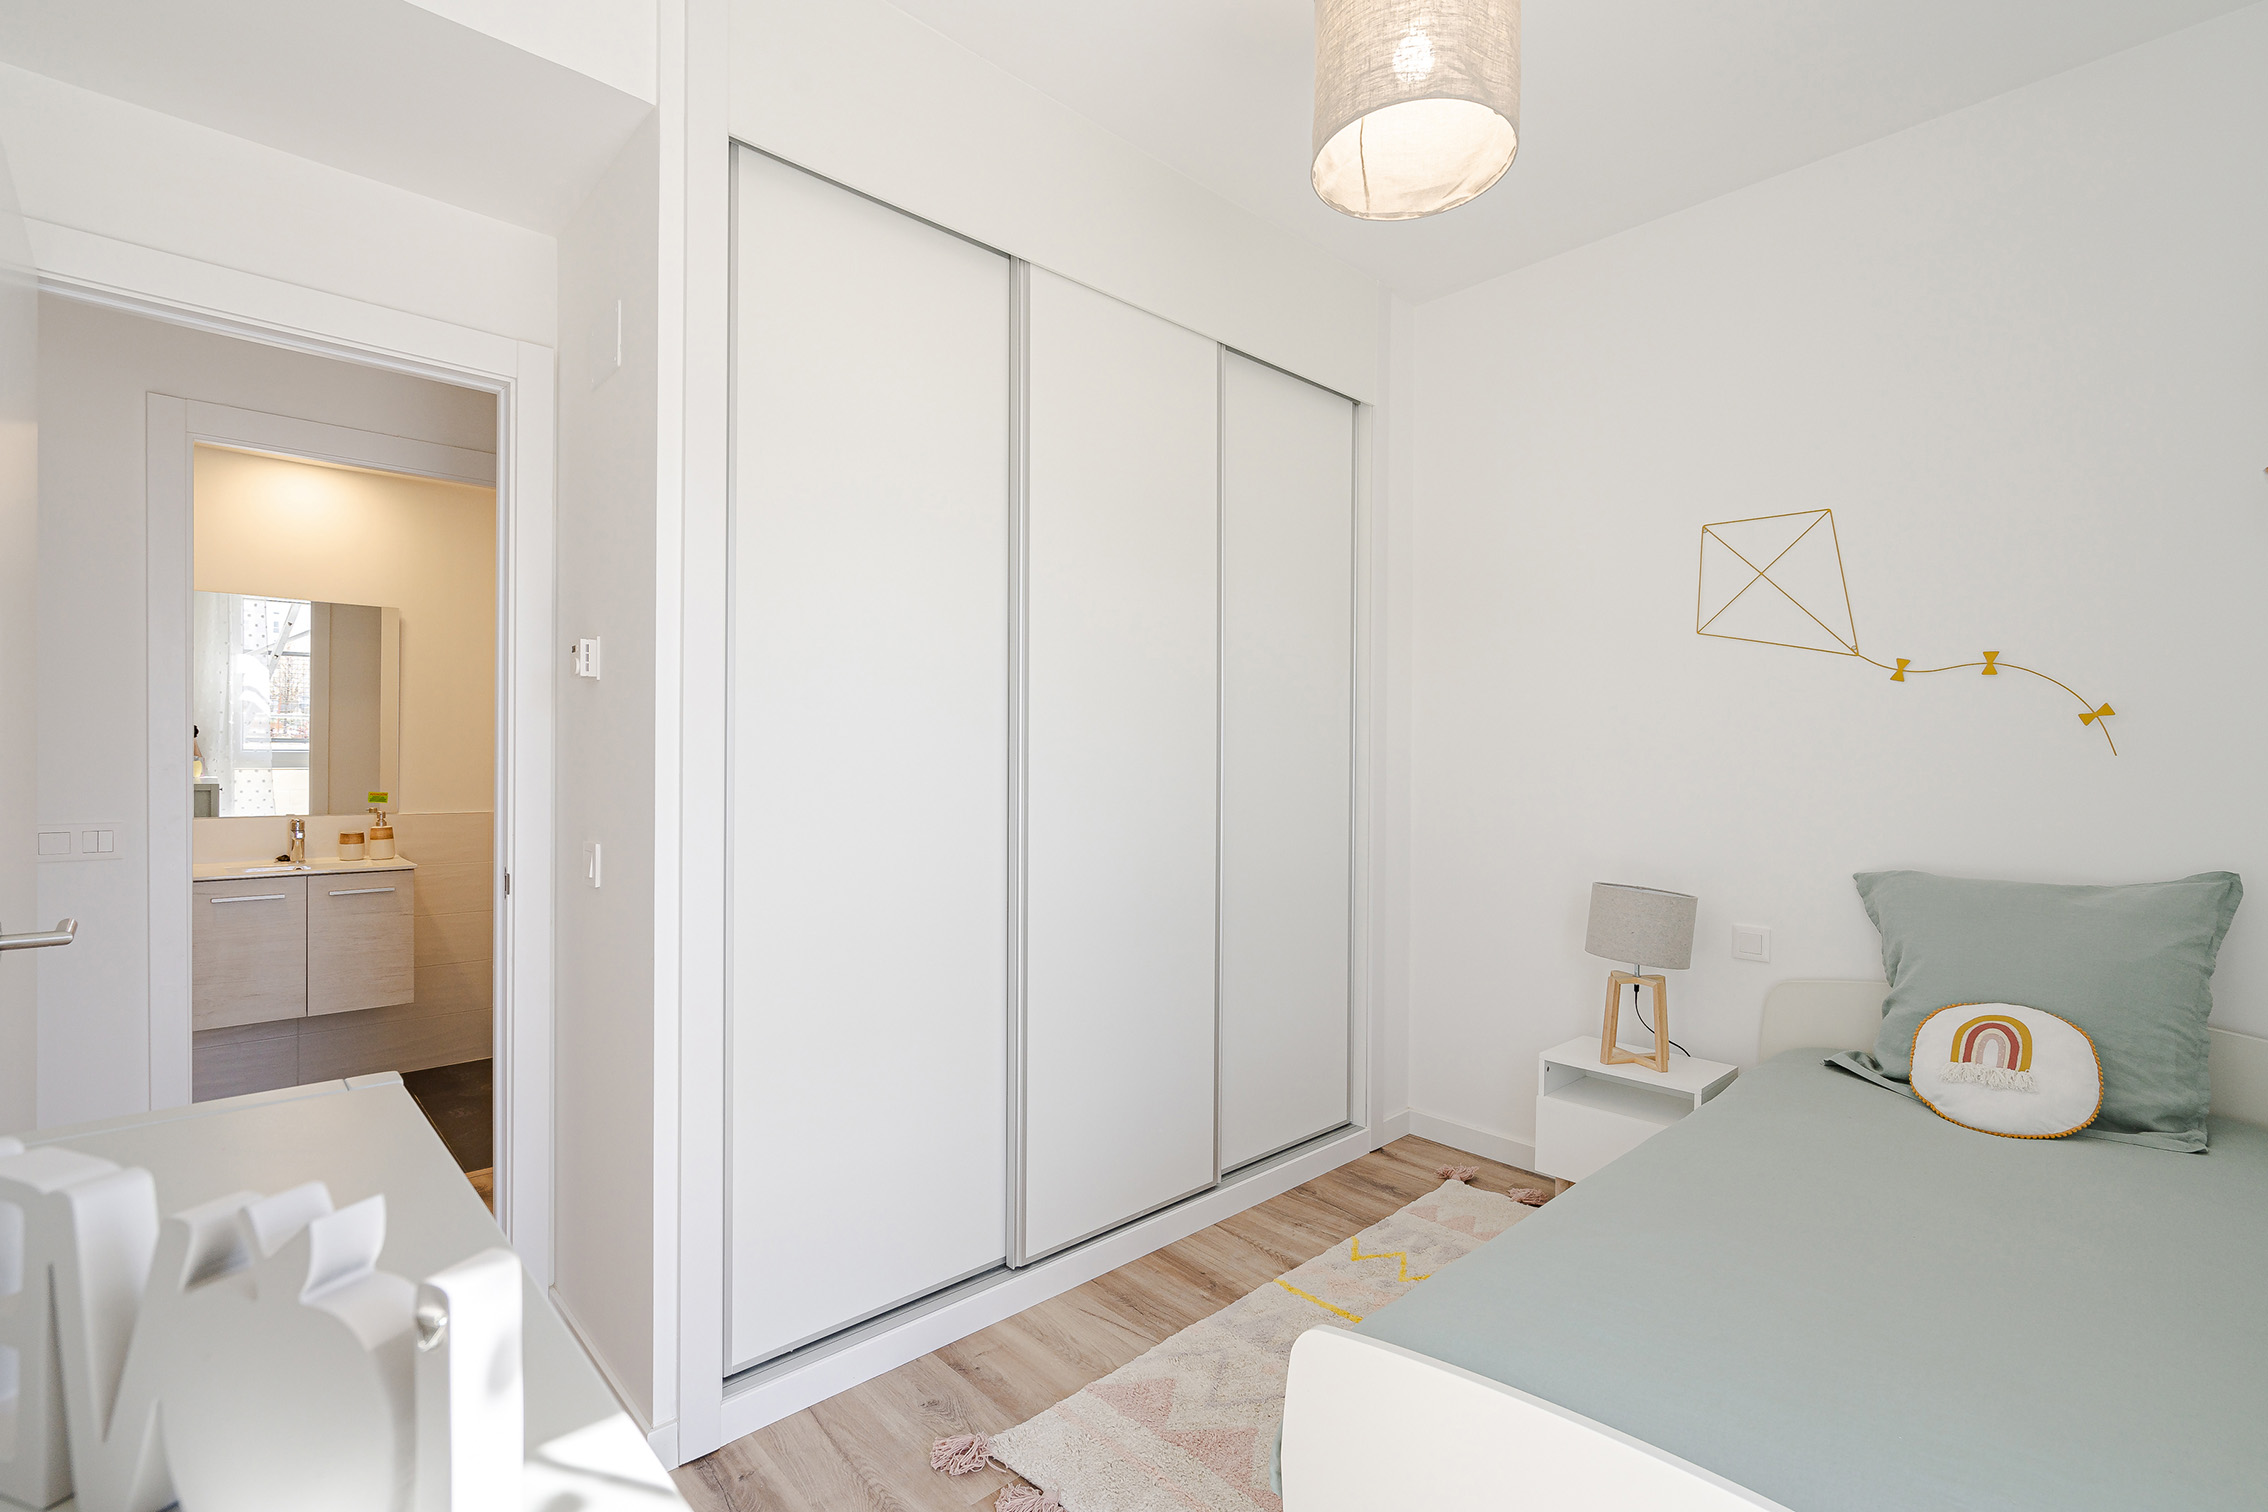 Residencial Vistahermosa | Venta de pisos de obra nueva en El Cañaveral - Vicálvaro (Madrid)